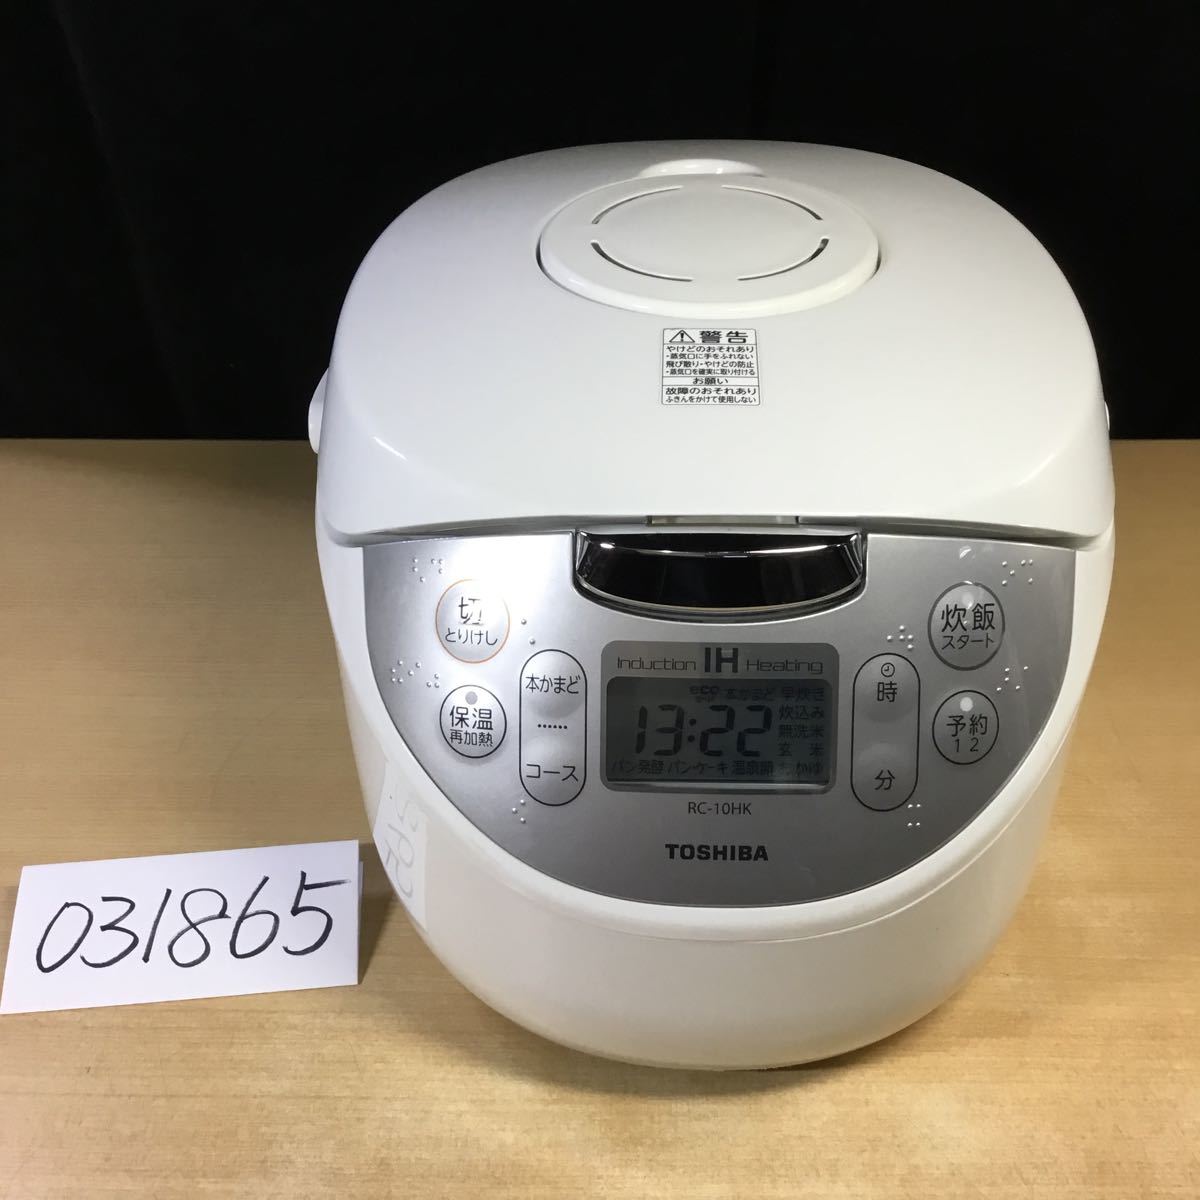 031865) 2021年製 TOSHIBA RC-10HK 東芝 IHジャー炊飯器 5.5合炊き